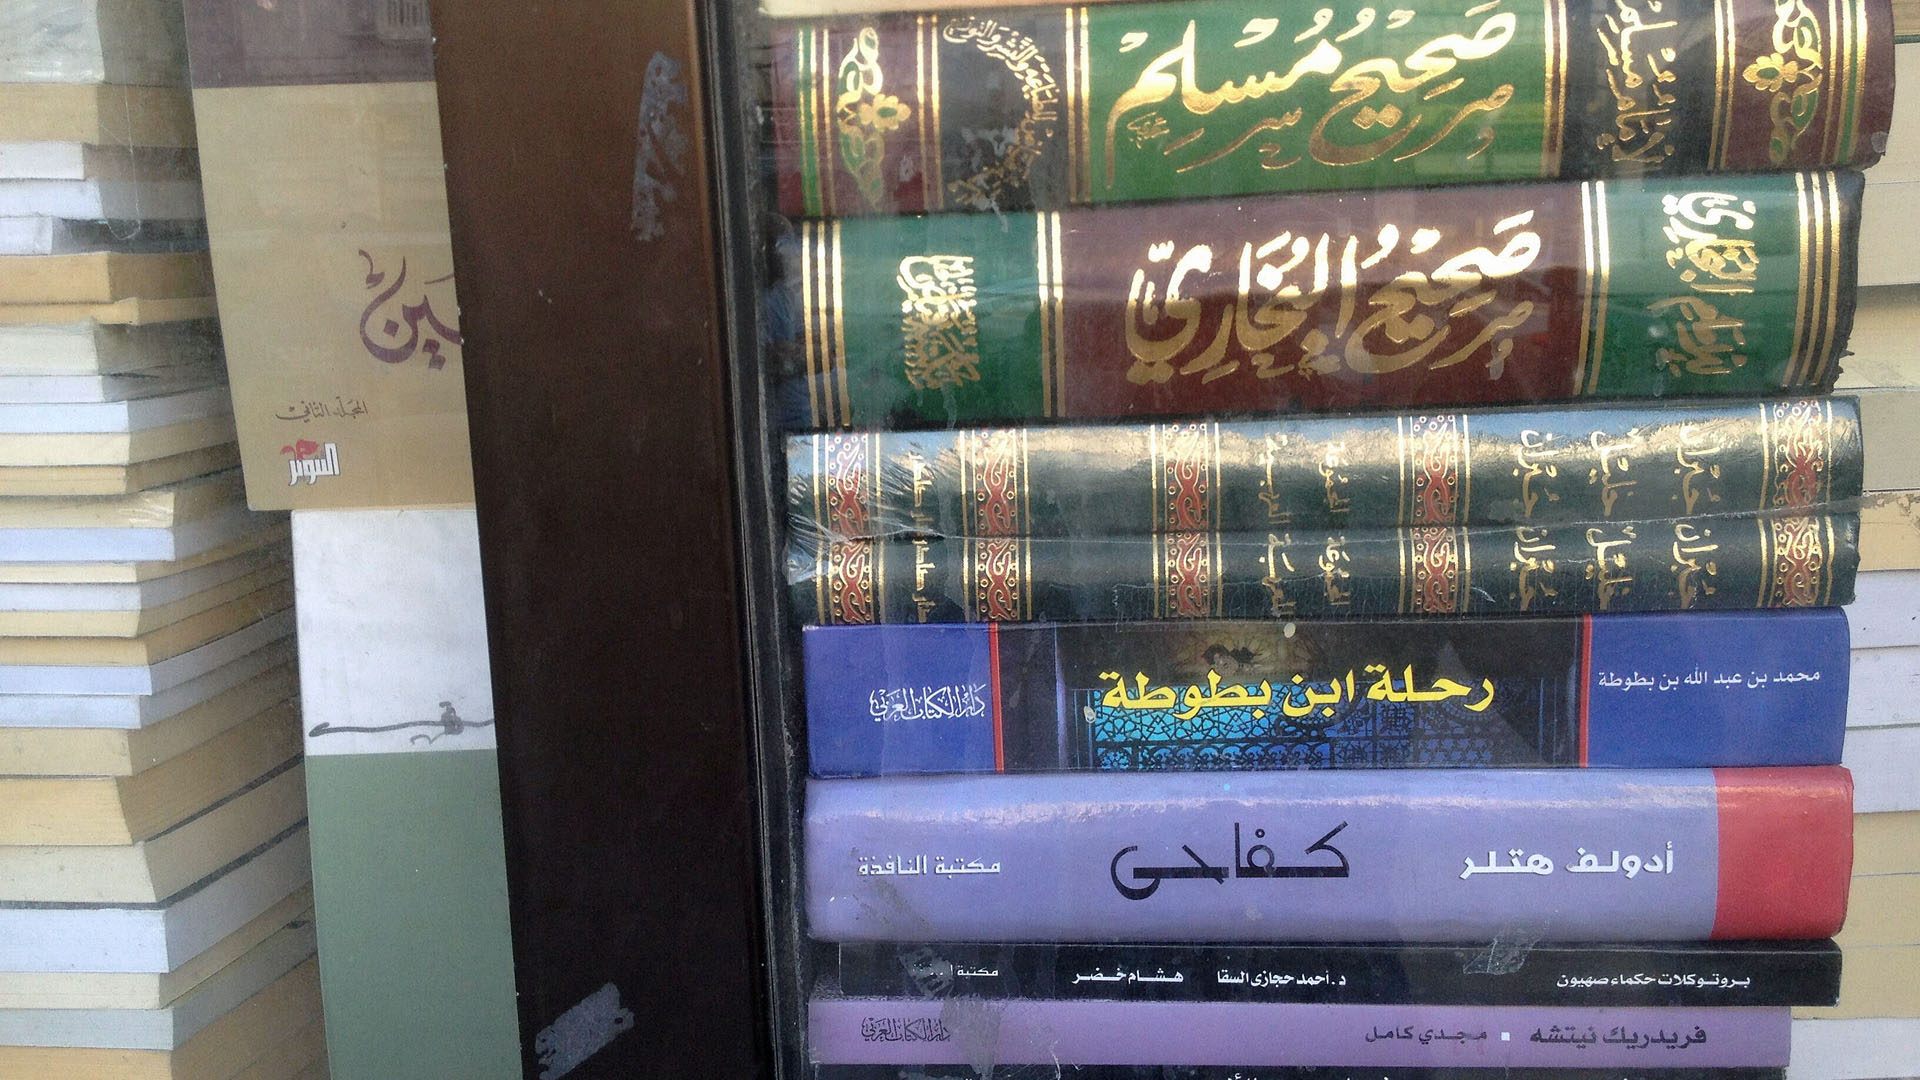 Jordanische Hauptstadt Amman: Inmitten von muslimischen religiösen Schriften liegt das Buch mit dem lilafarbenen Einband und dem roten Streifen unten: „Kifahi“, „Mein Kampf“